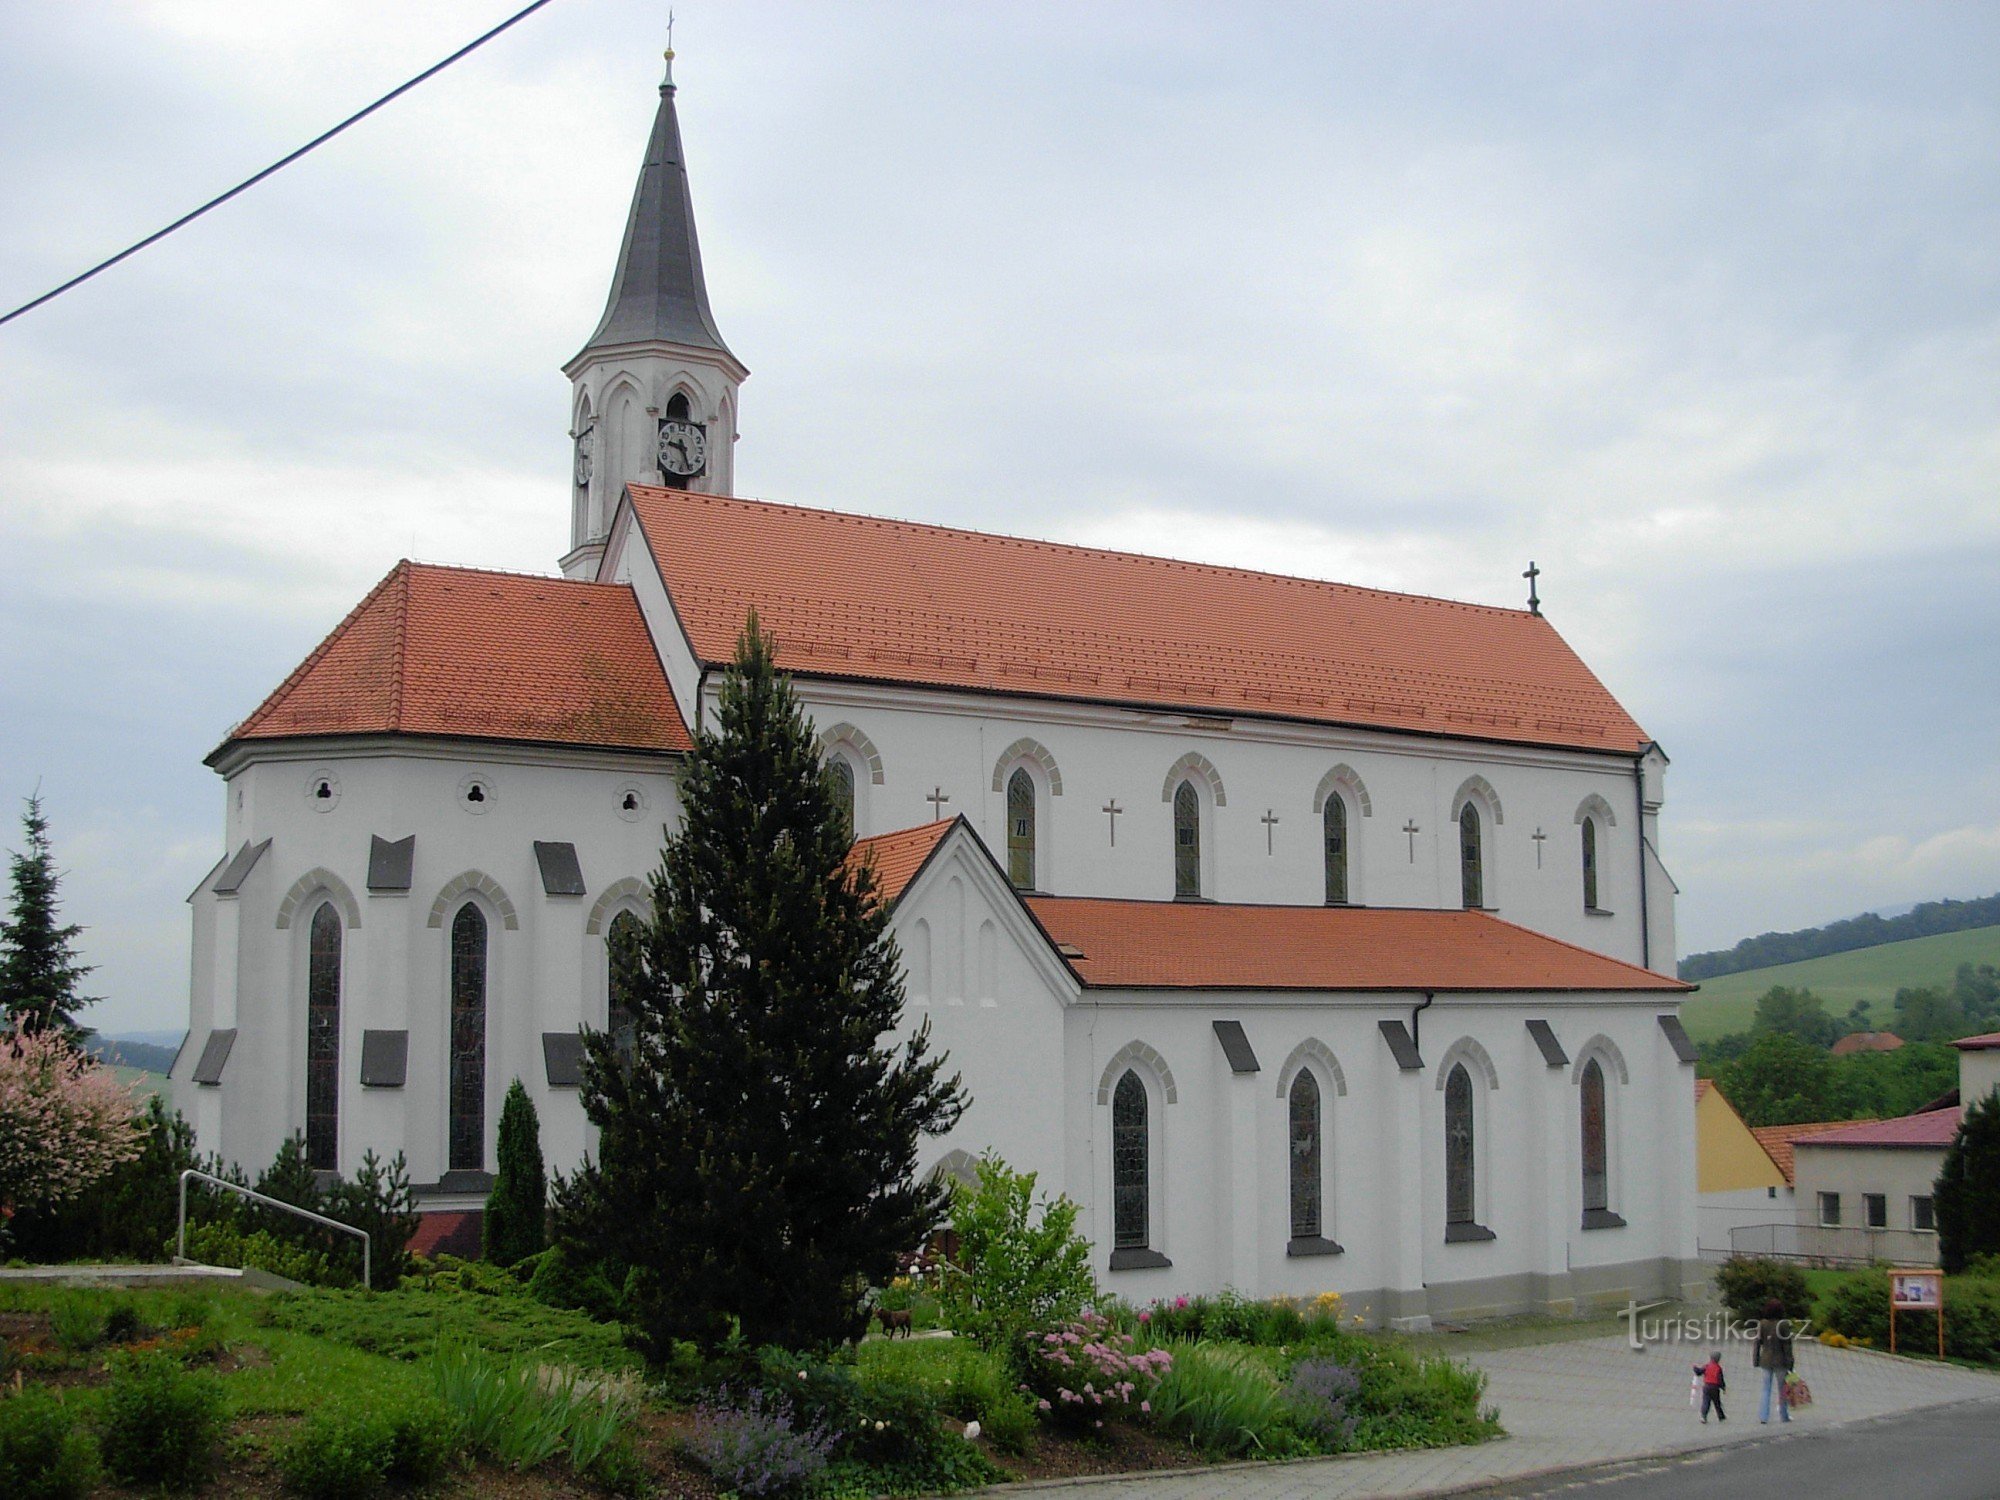 Villaggio Březová - chiesa